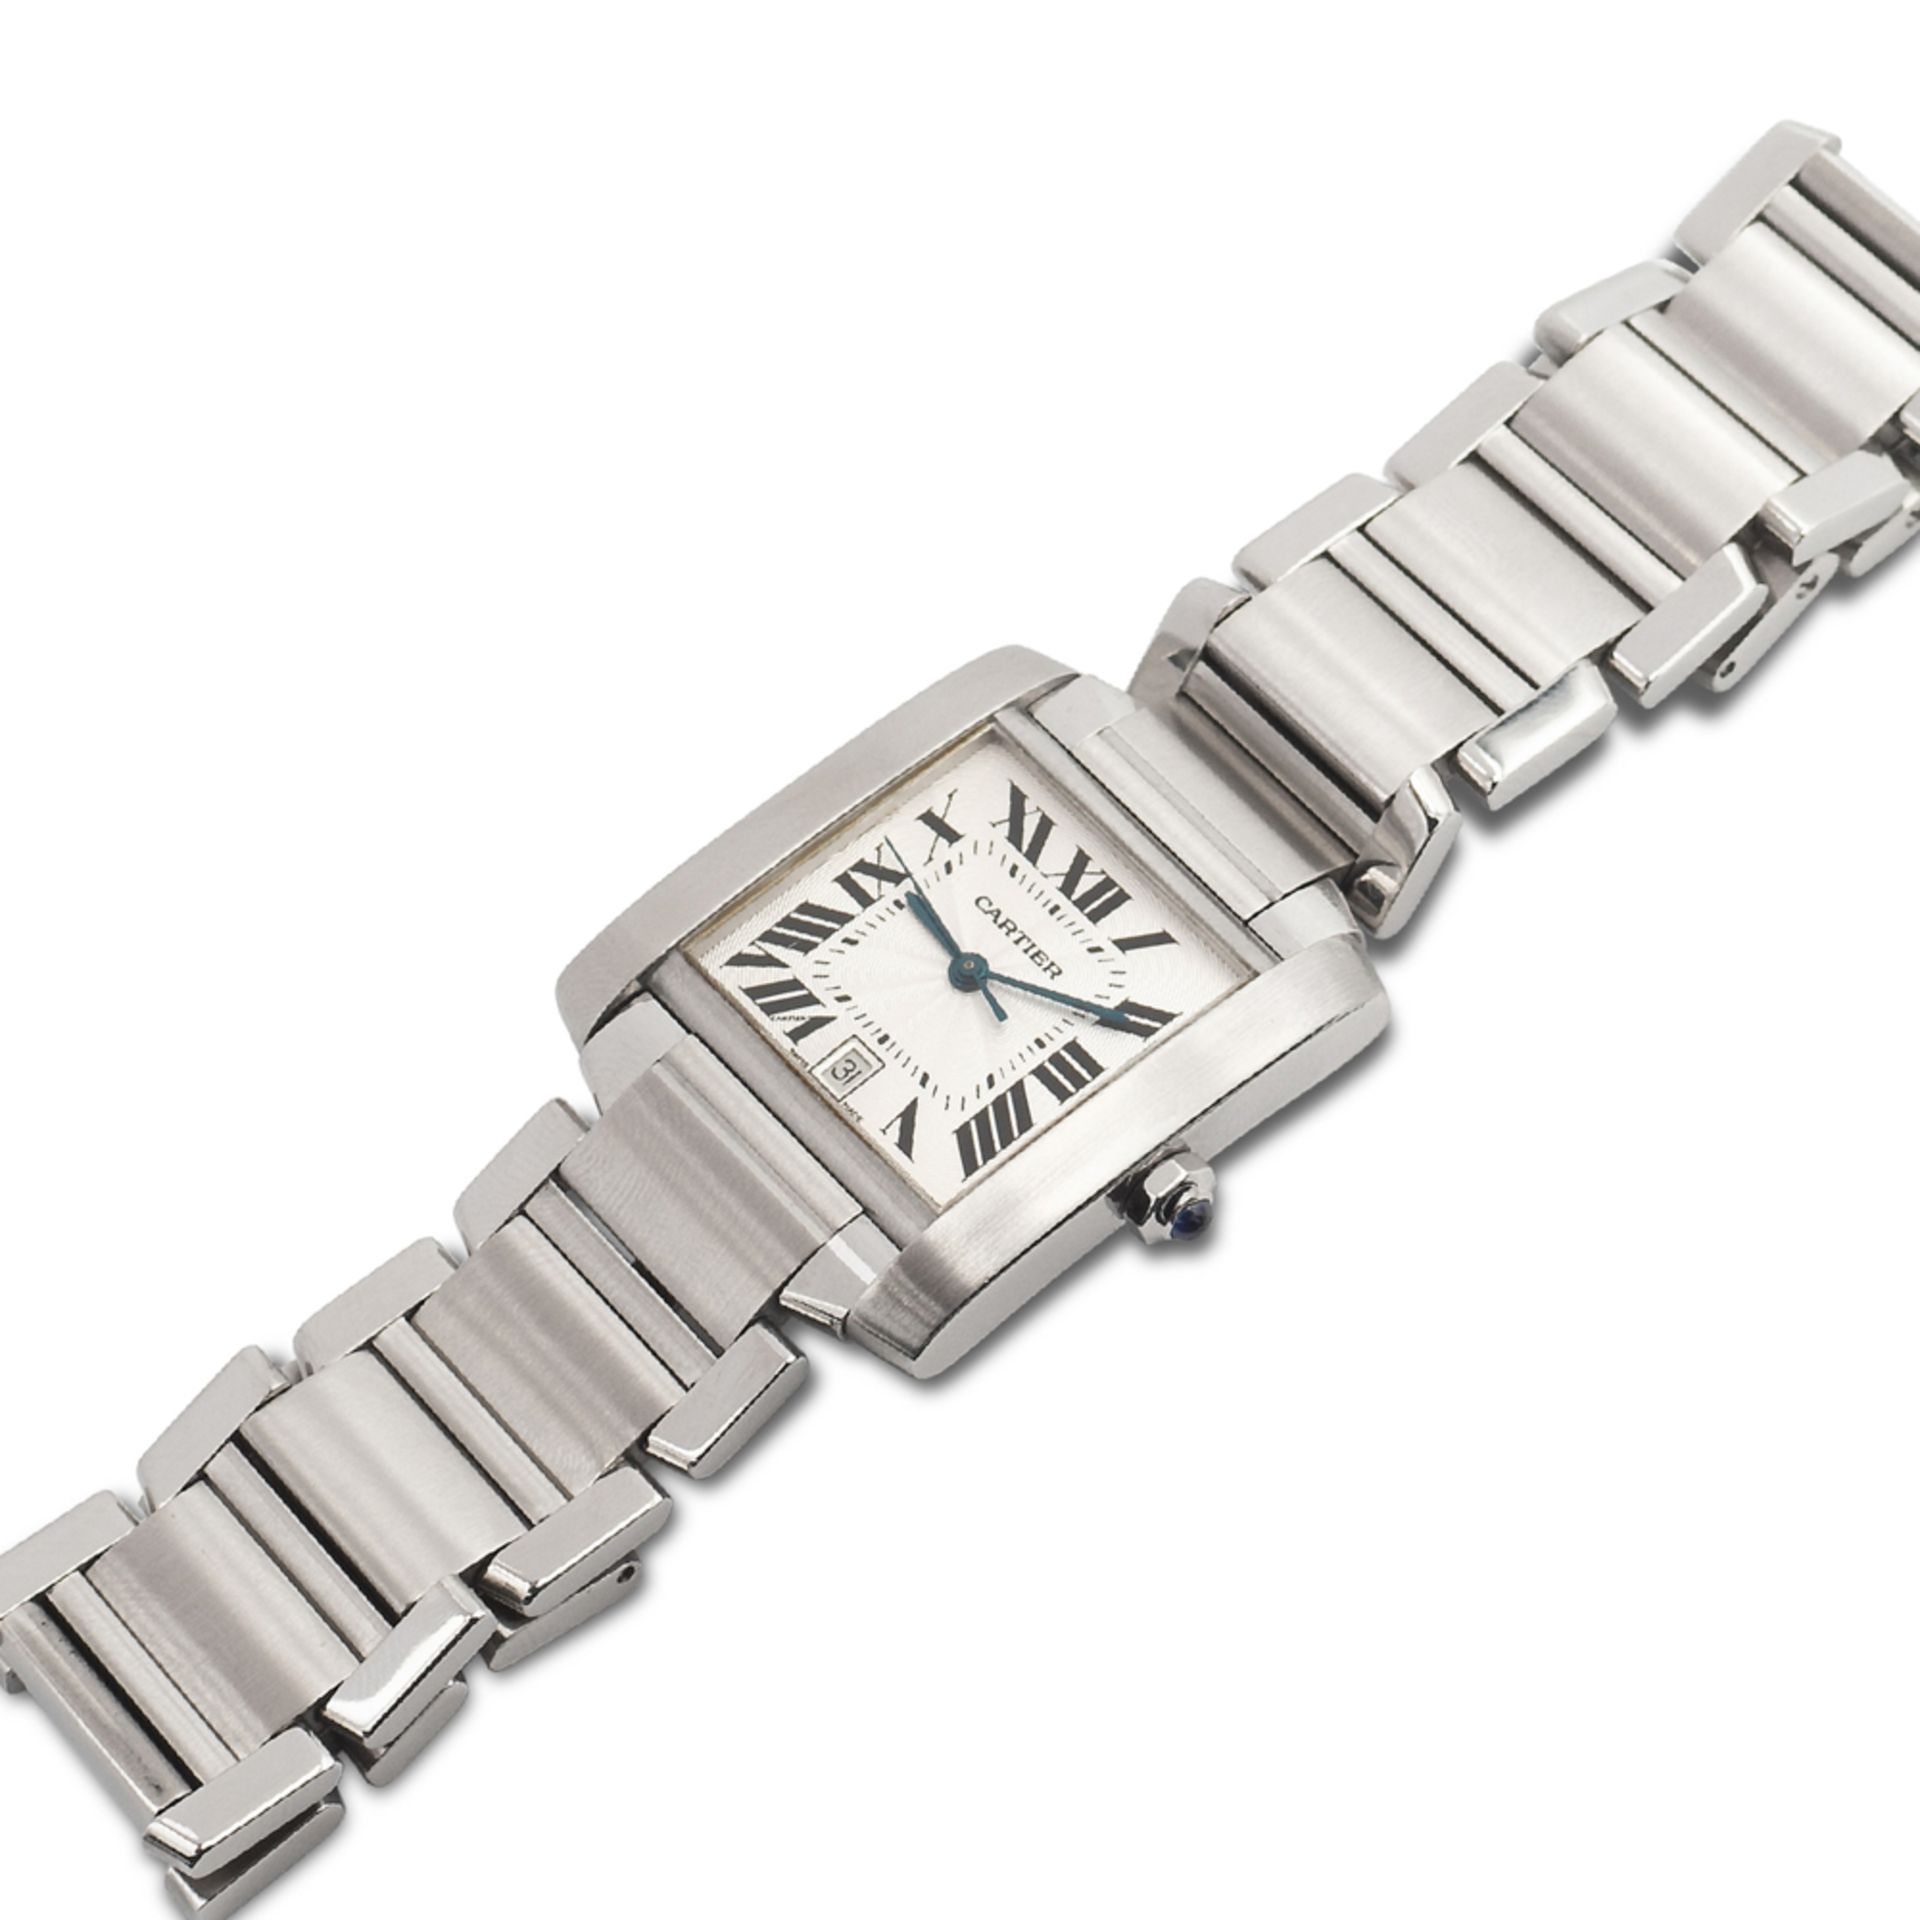 Cartier Tank Française, wrist watch 2000s weight 94,74 gr. - Image 2 of 4